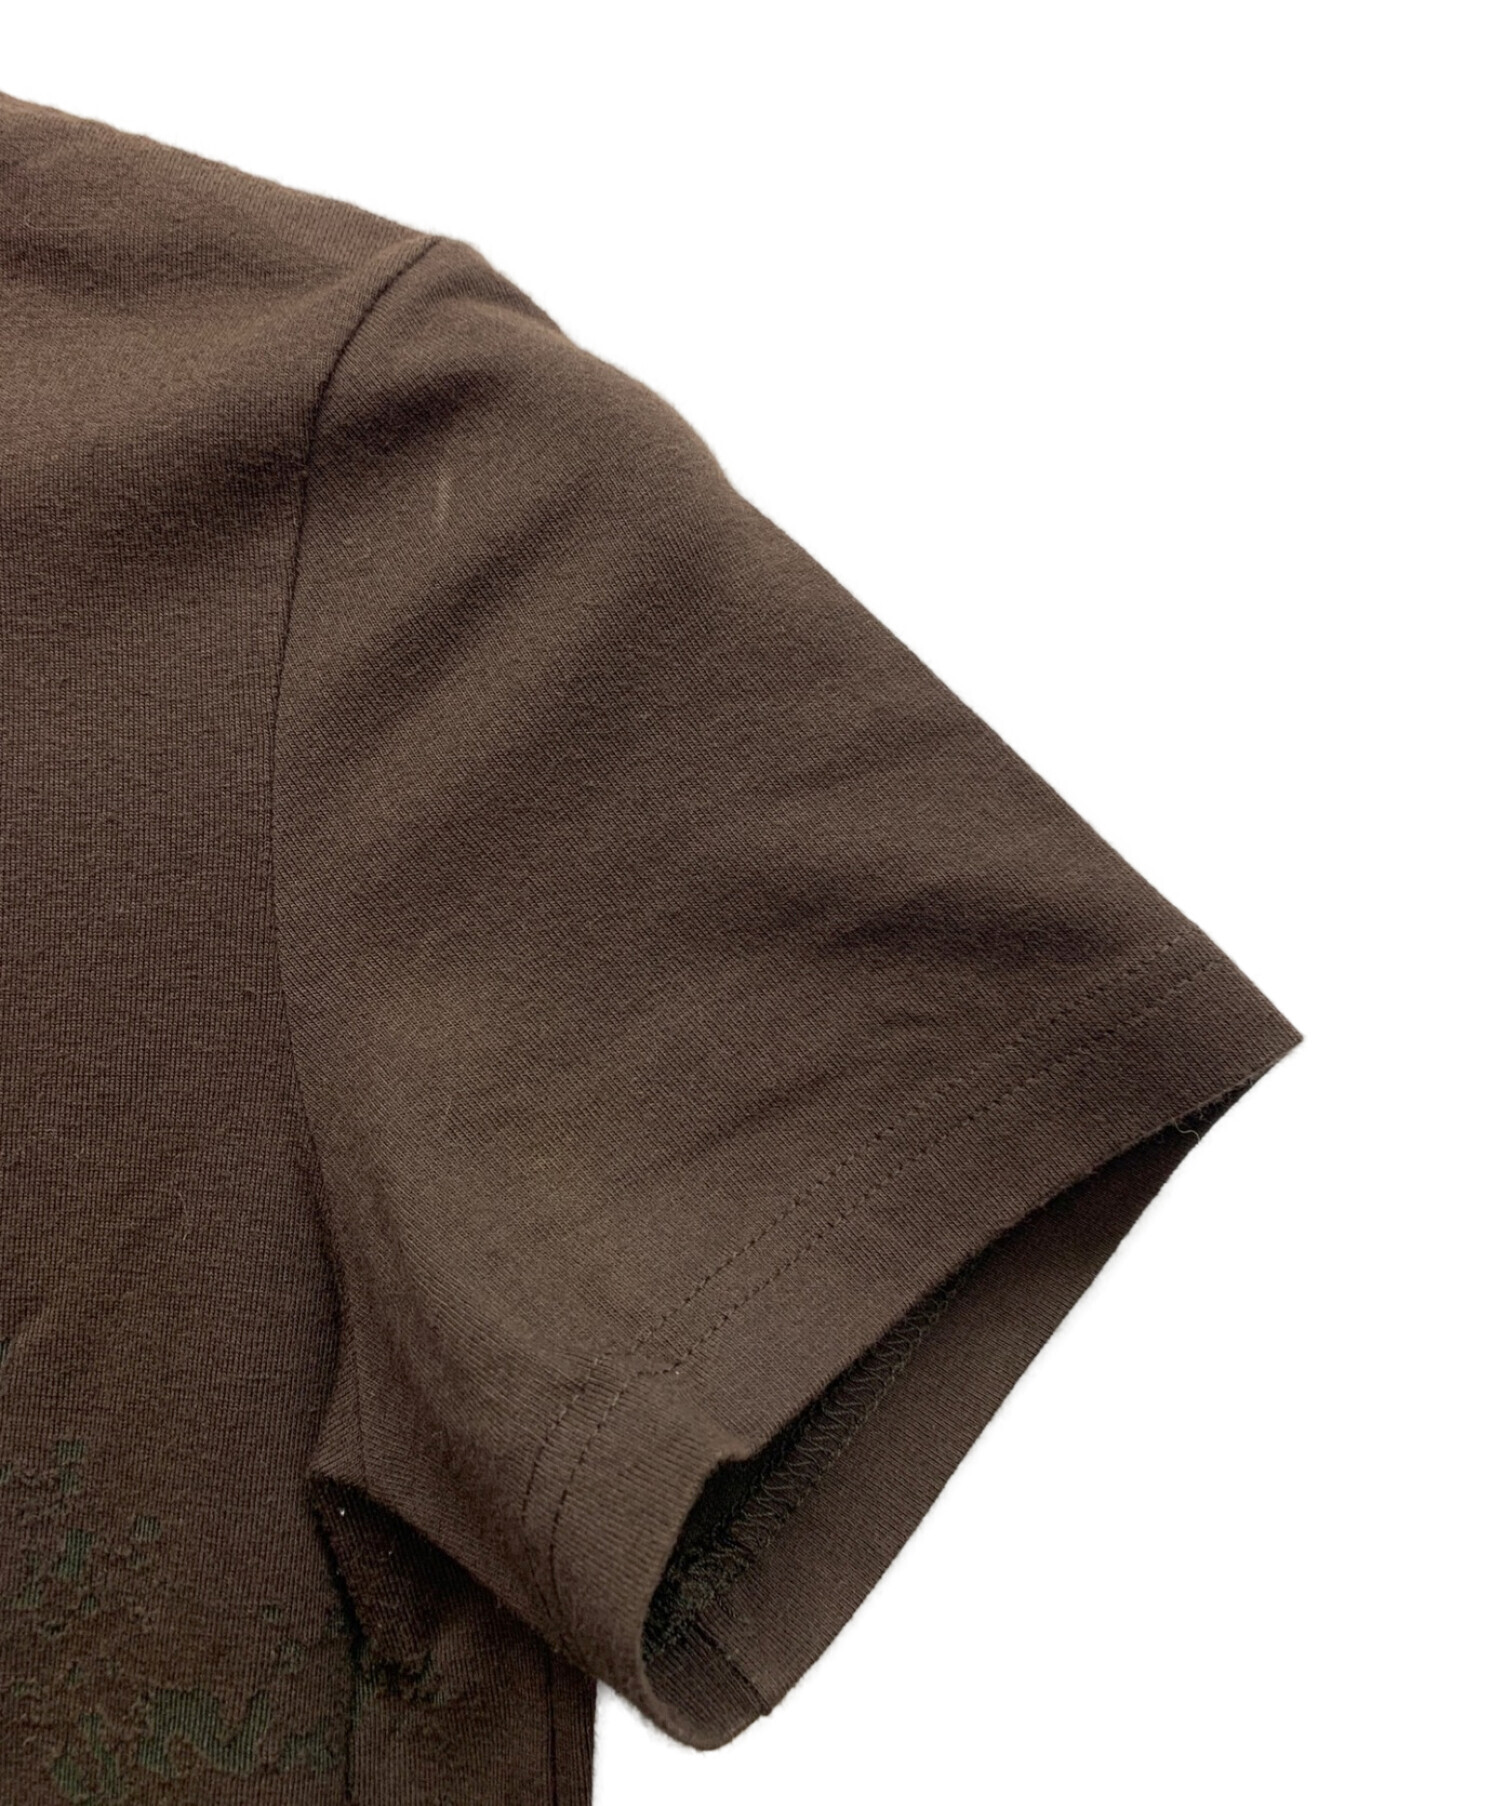 HERMES (エルメス) 馬車ロゴデザインTシャツ ダークブラウン サイズ:38